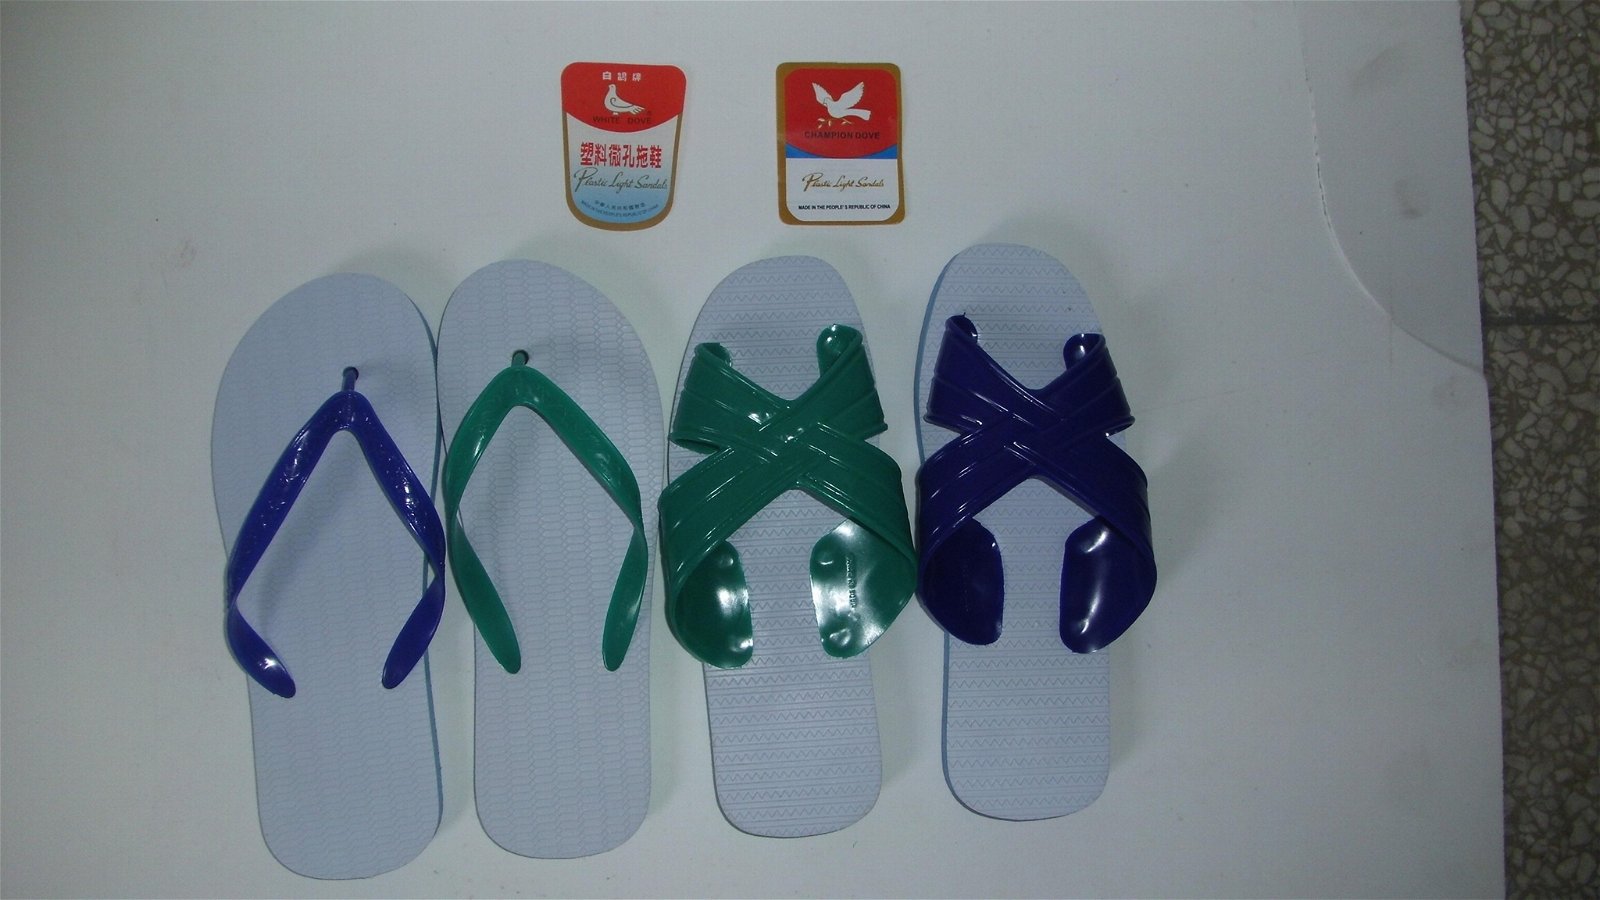 出口非洲中東東南亞拉美南美811790790k款白鴿牌塑料微孔拖鞋涼鞋